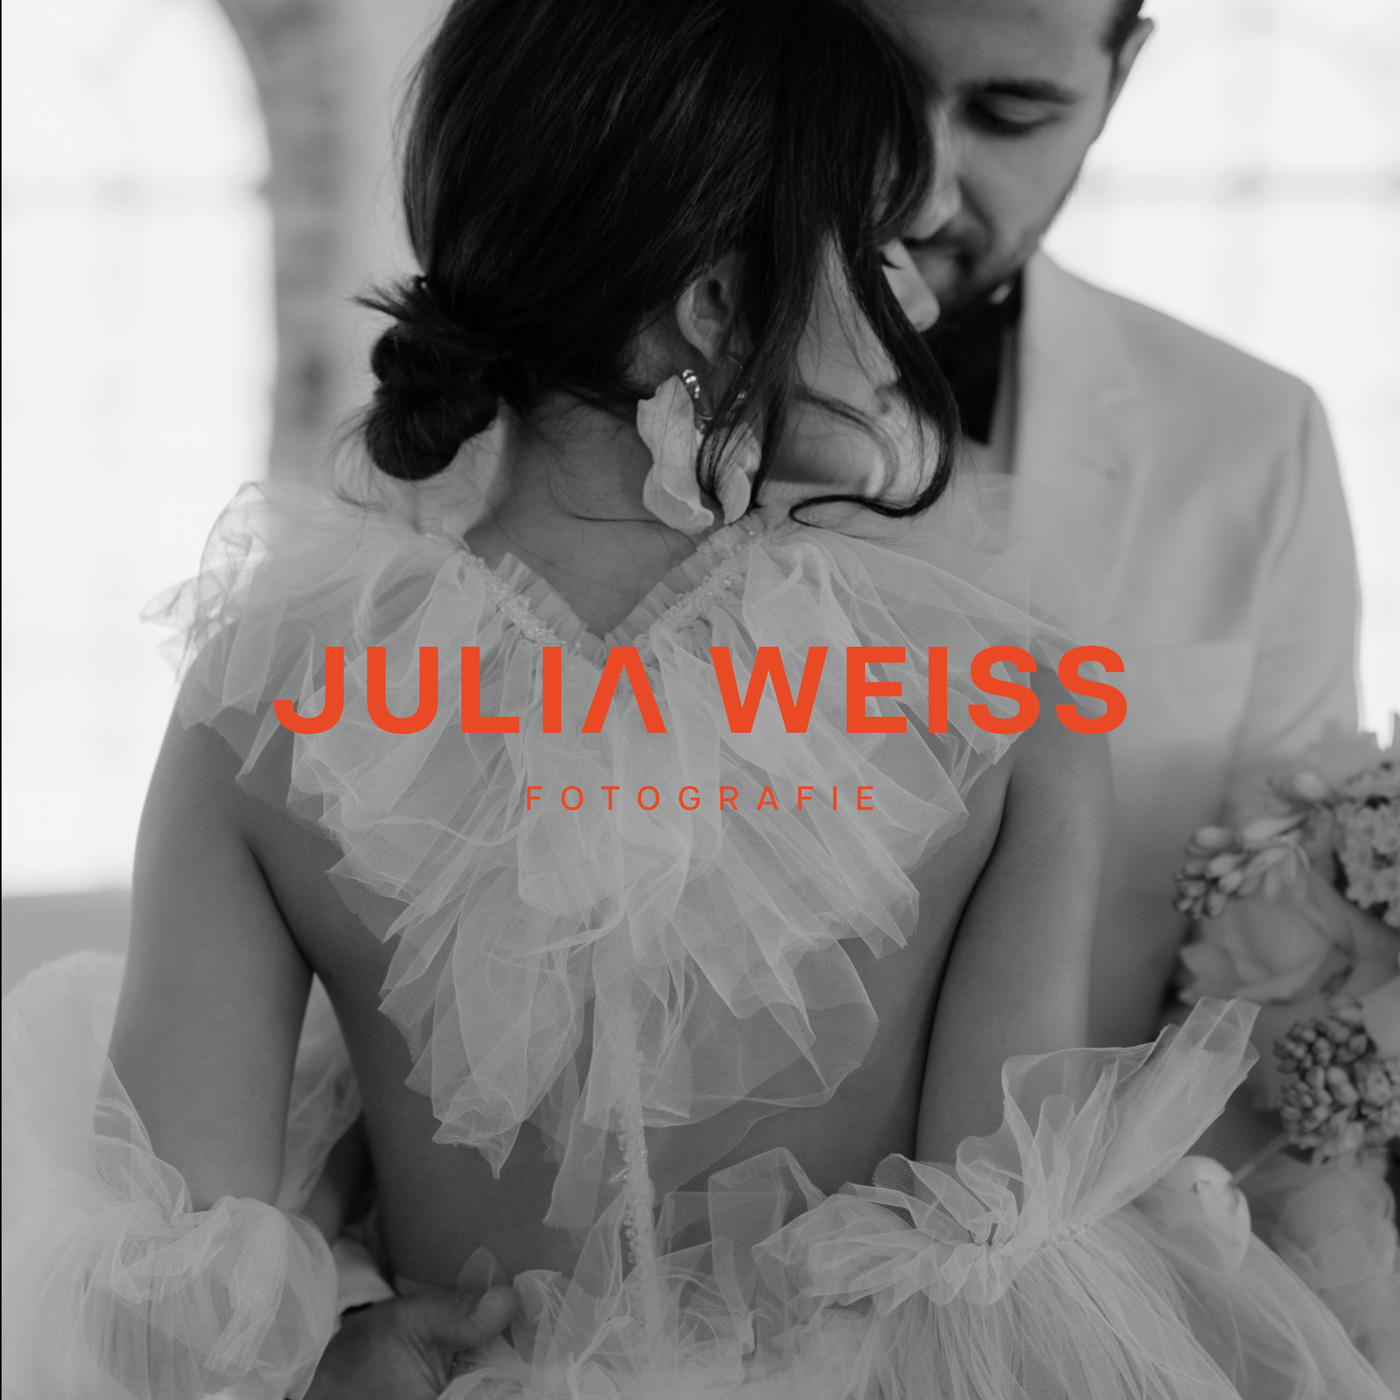 Julia Weiss Fotografie - Branding Stimmungsbild Brautpaar mit Orangenem Logo mittig